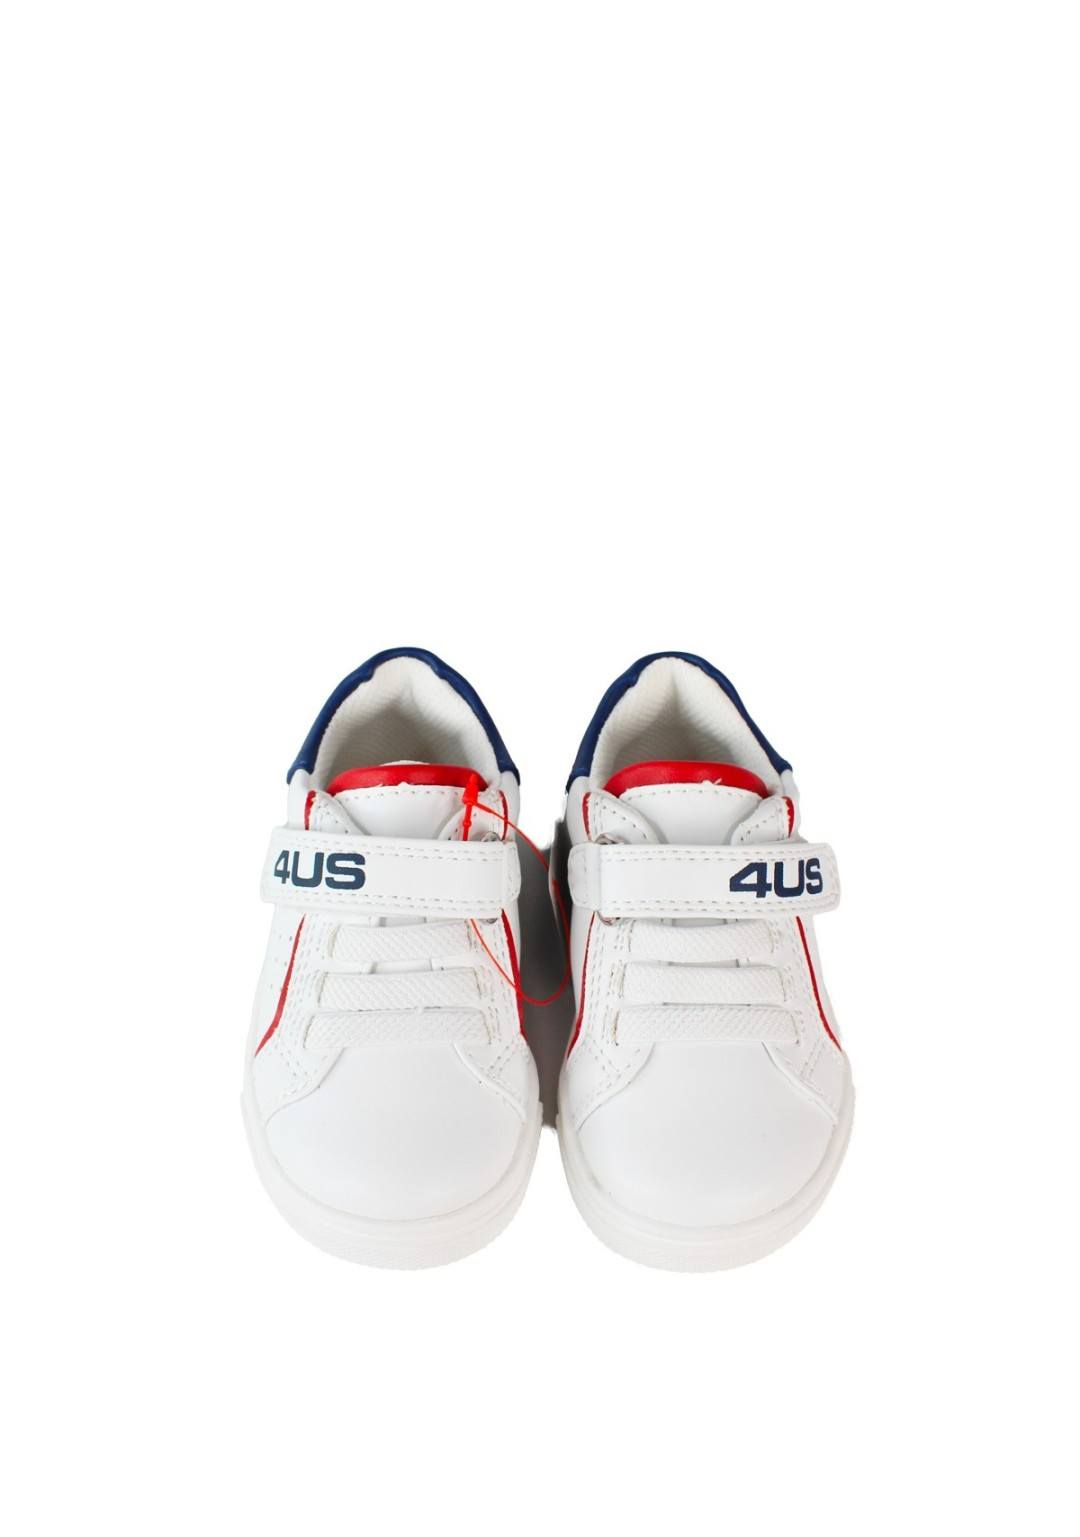 4US - Sneaker Strappo - Bambini e ragazzi - 42470